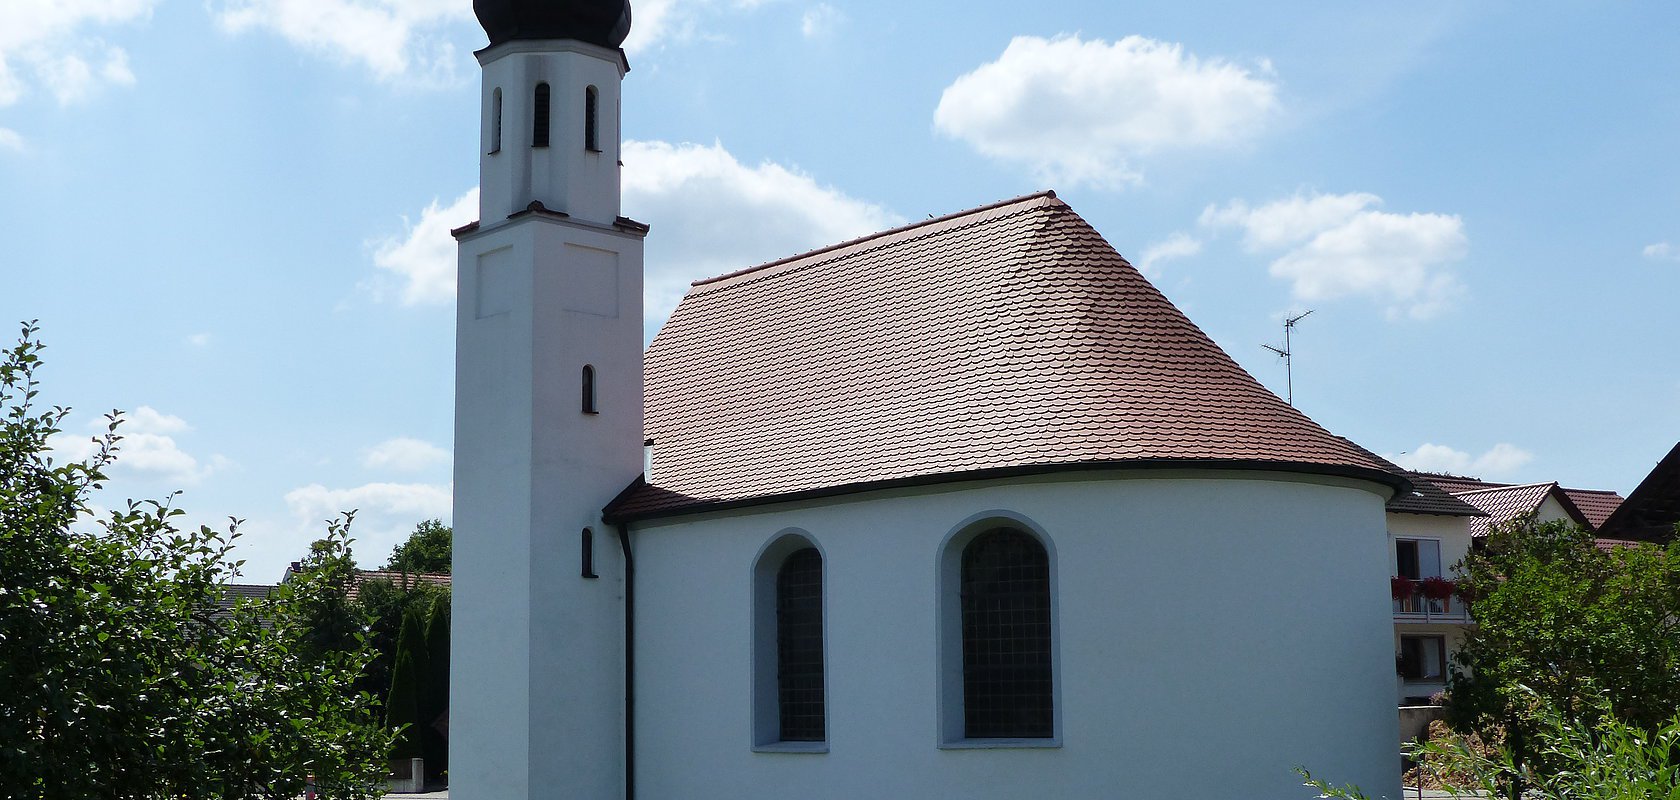 Filialkirche St. Apollonia Kölburg